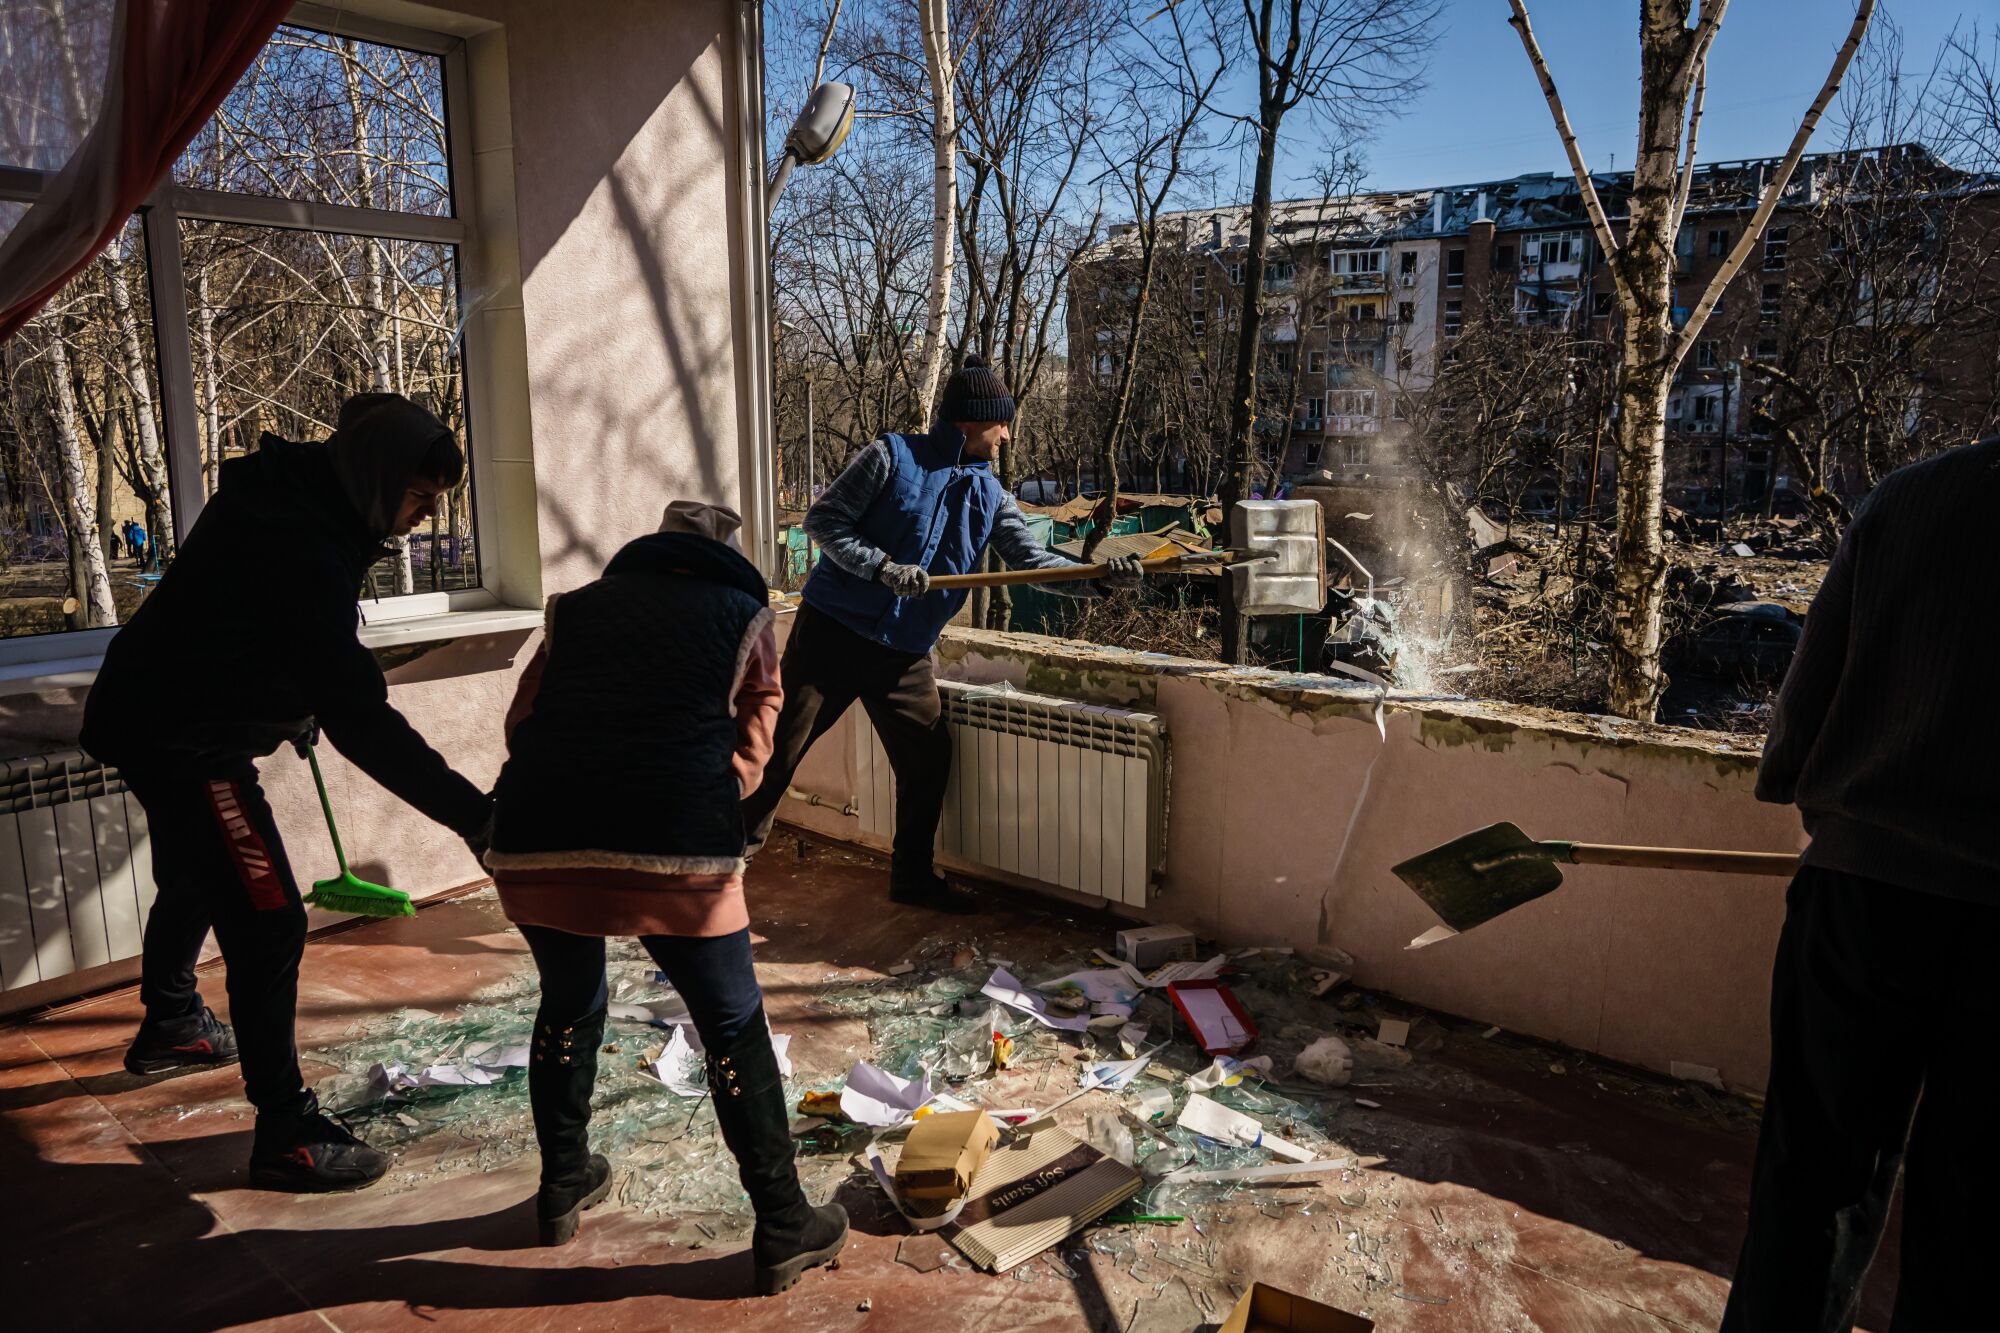 Voluntarios ayudan a limpiar una escuela infantil que se encontraba frente a la zona residencial atacada en Kyiv, Ucrania.